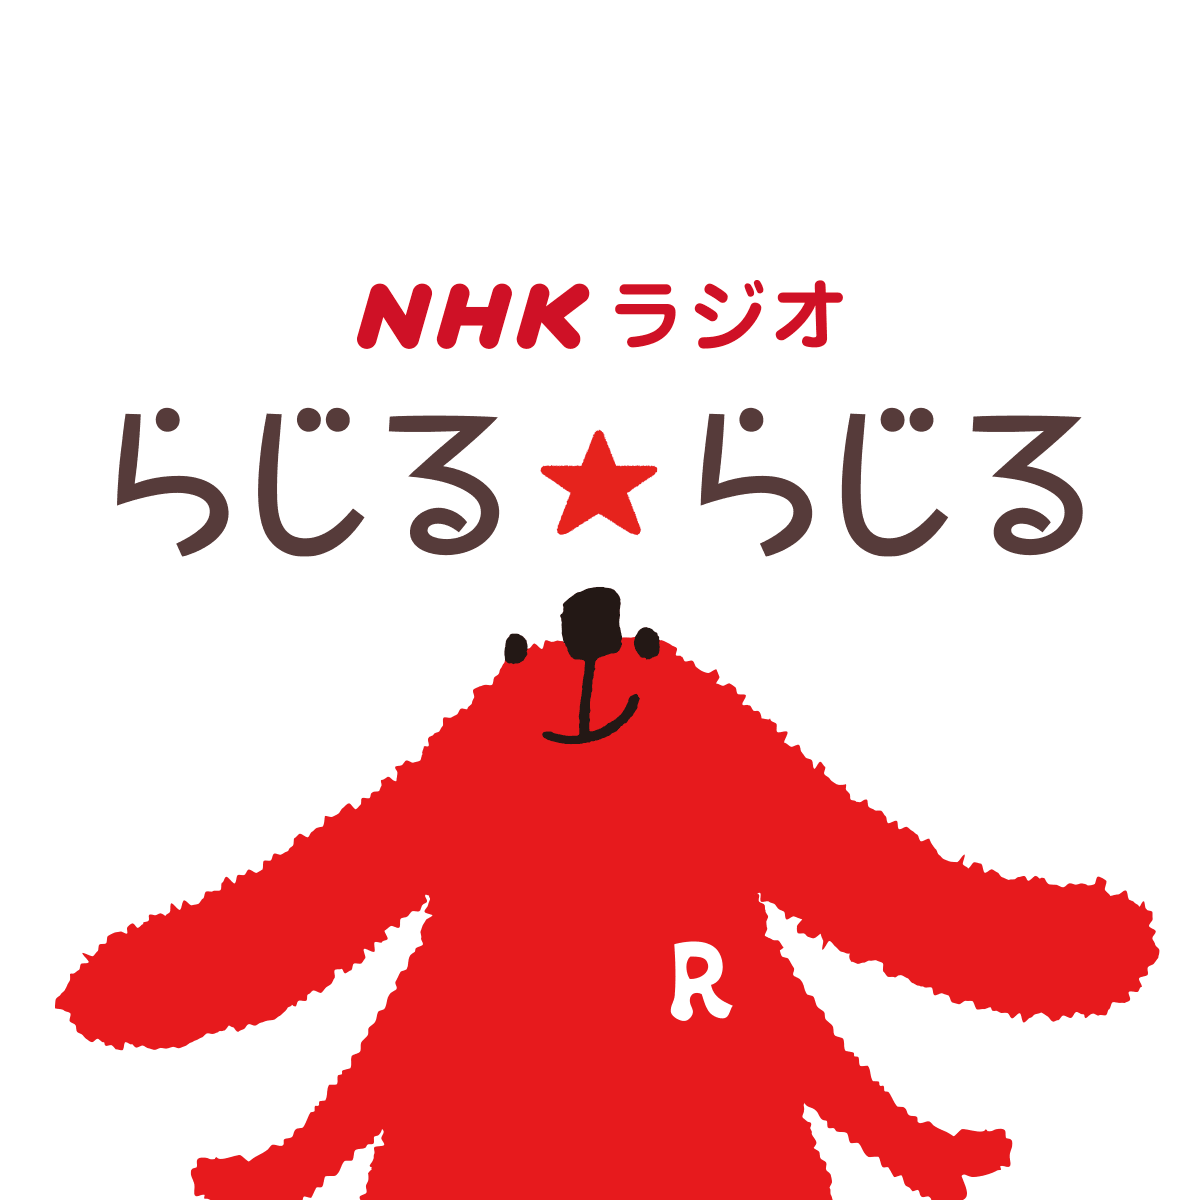 NHK radio